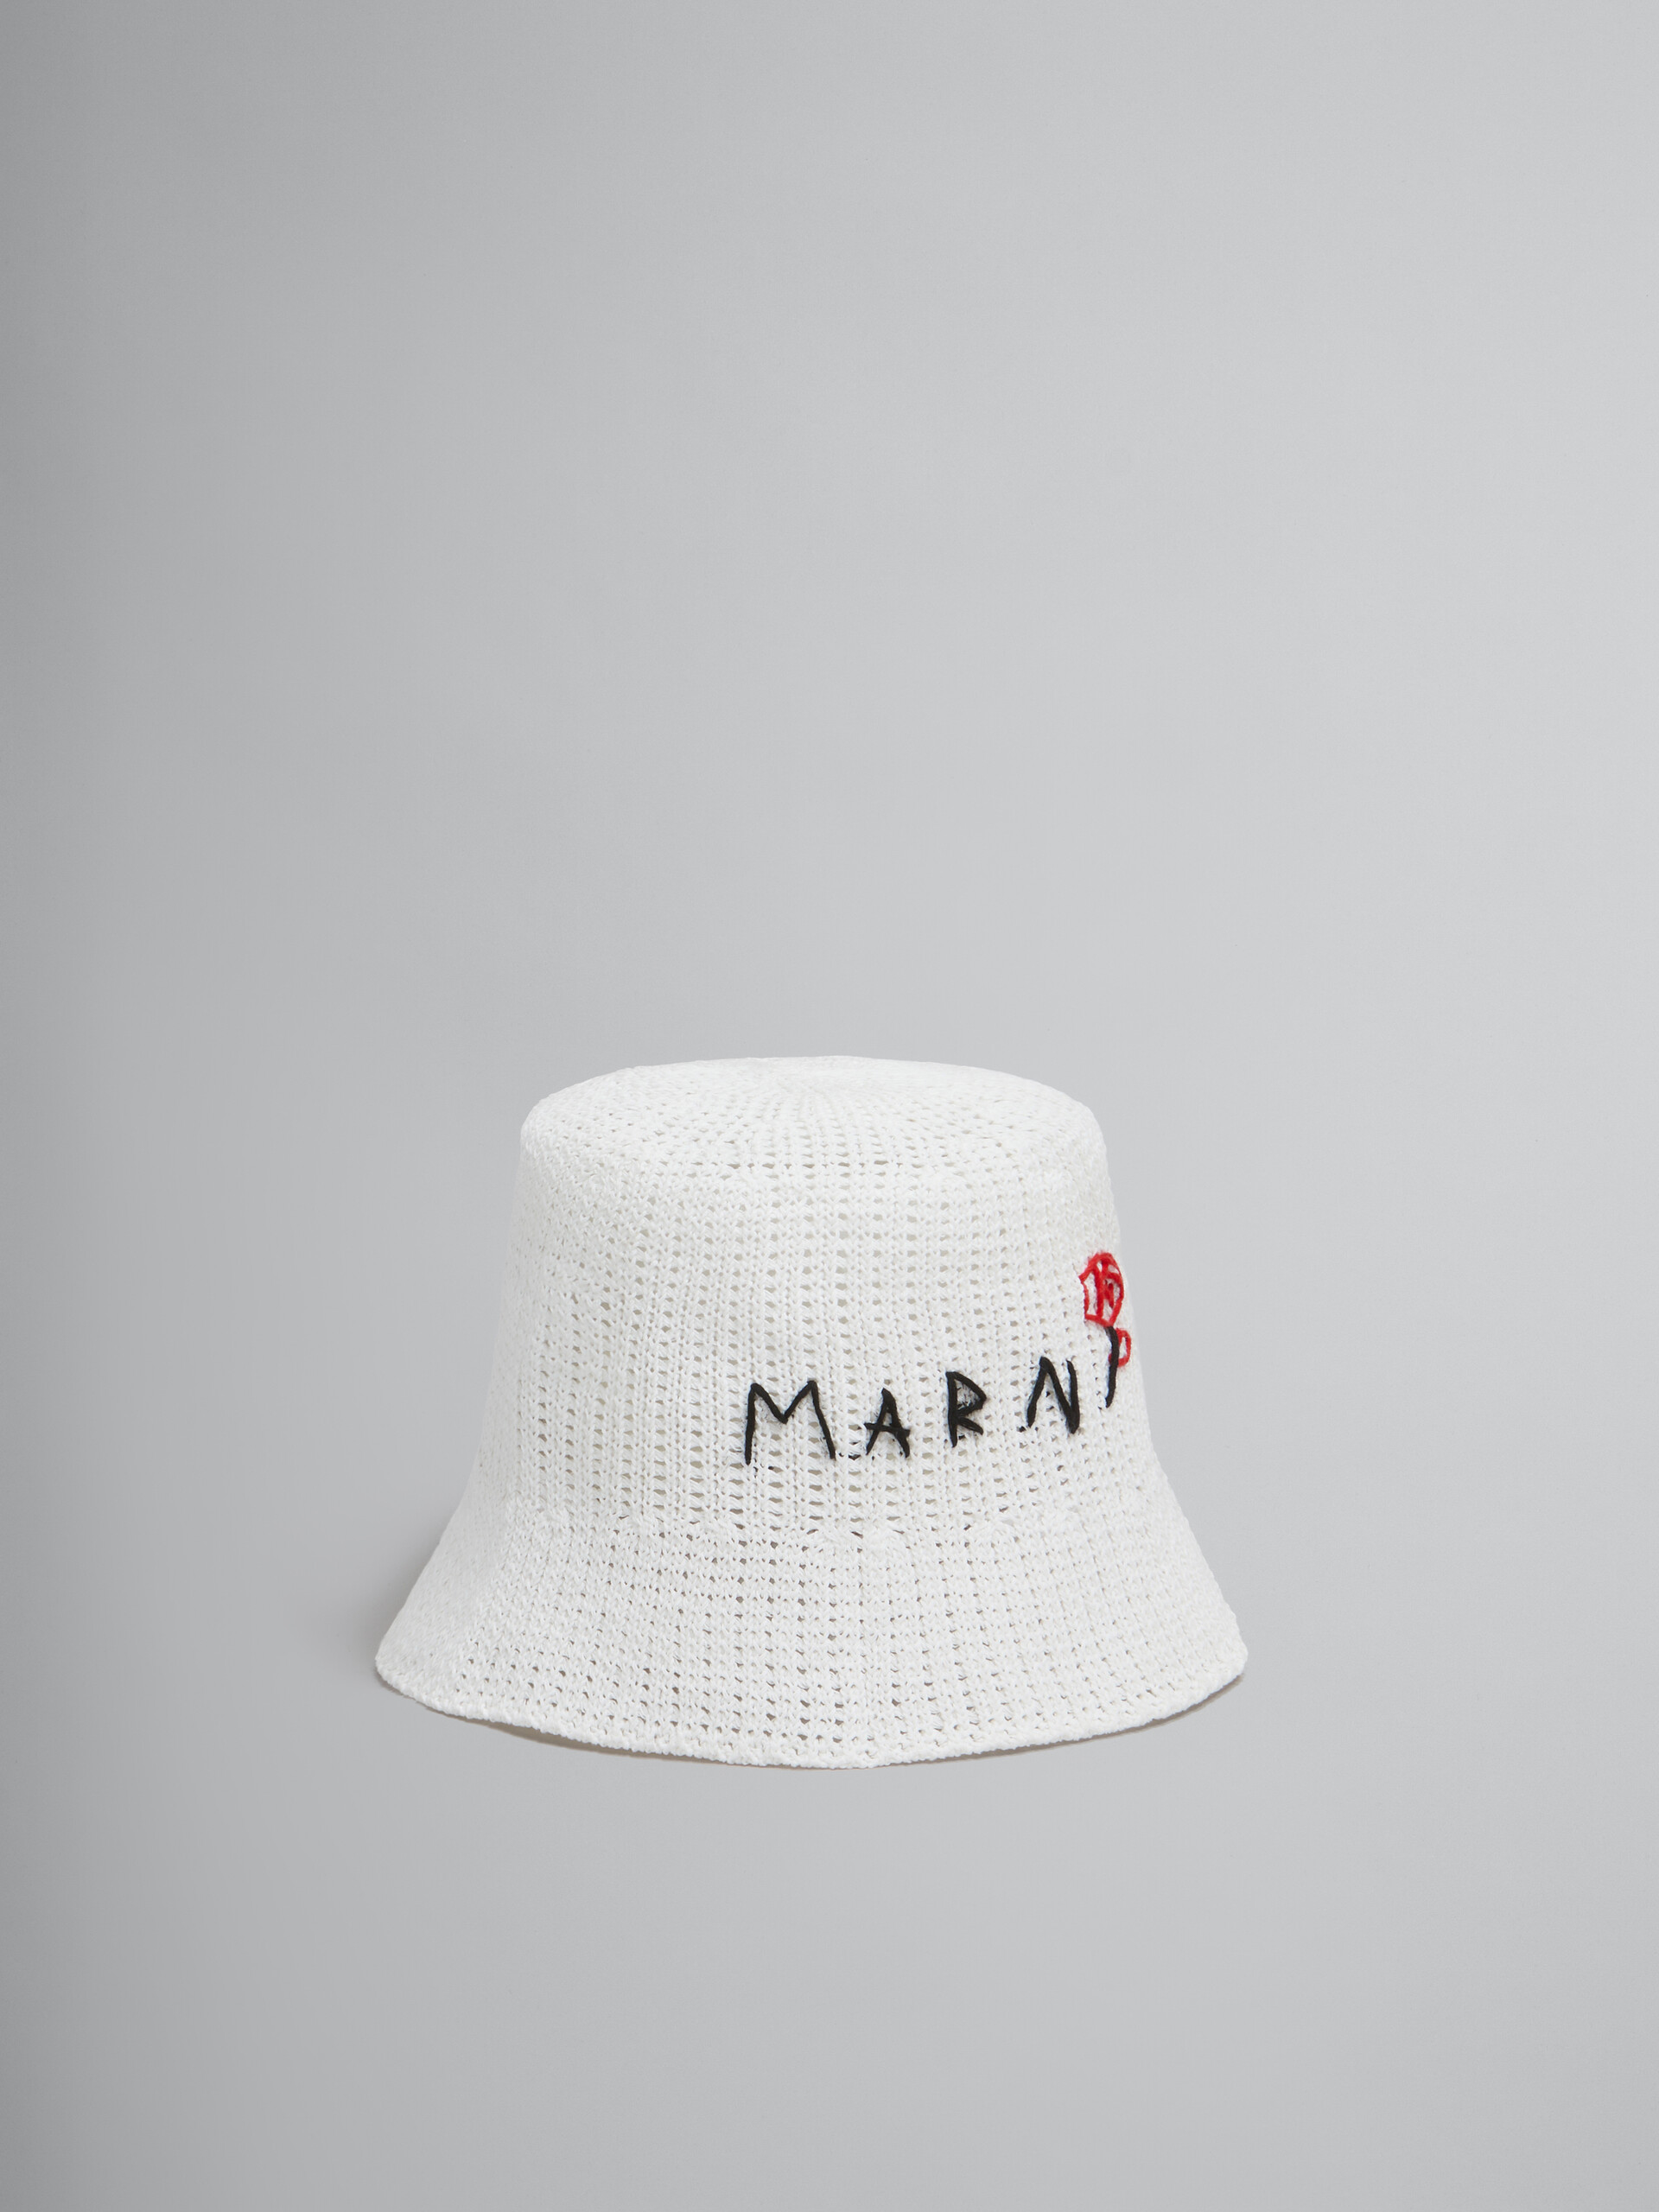 Gorro blanco de croché de algodón con remiendo Marni - Sombrero - Image 1